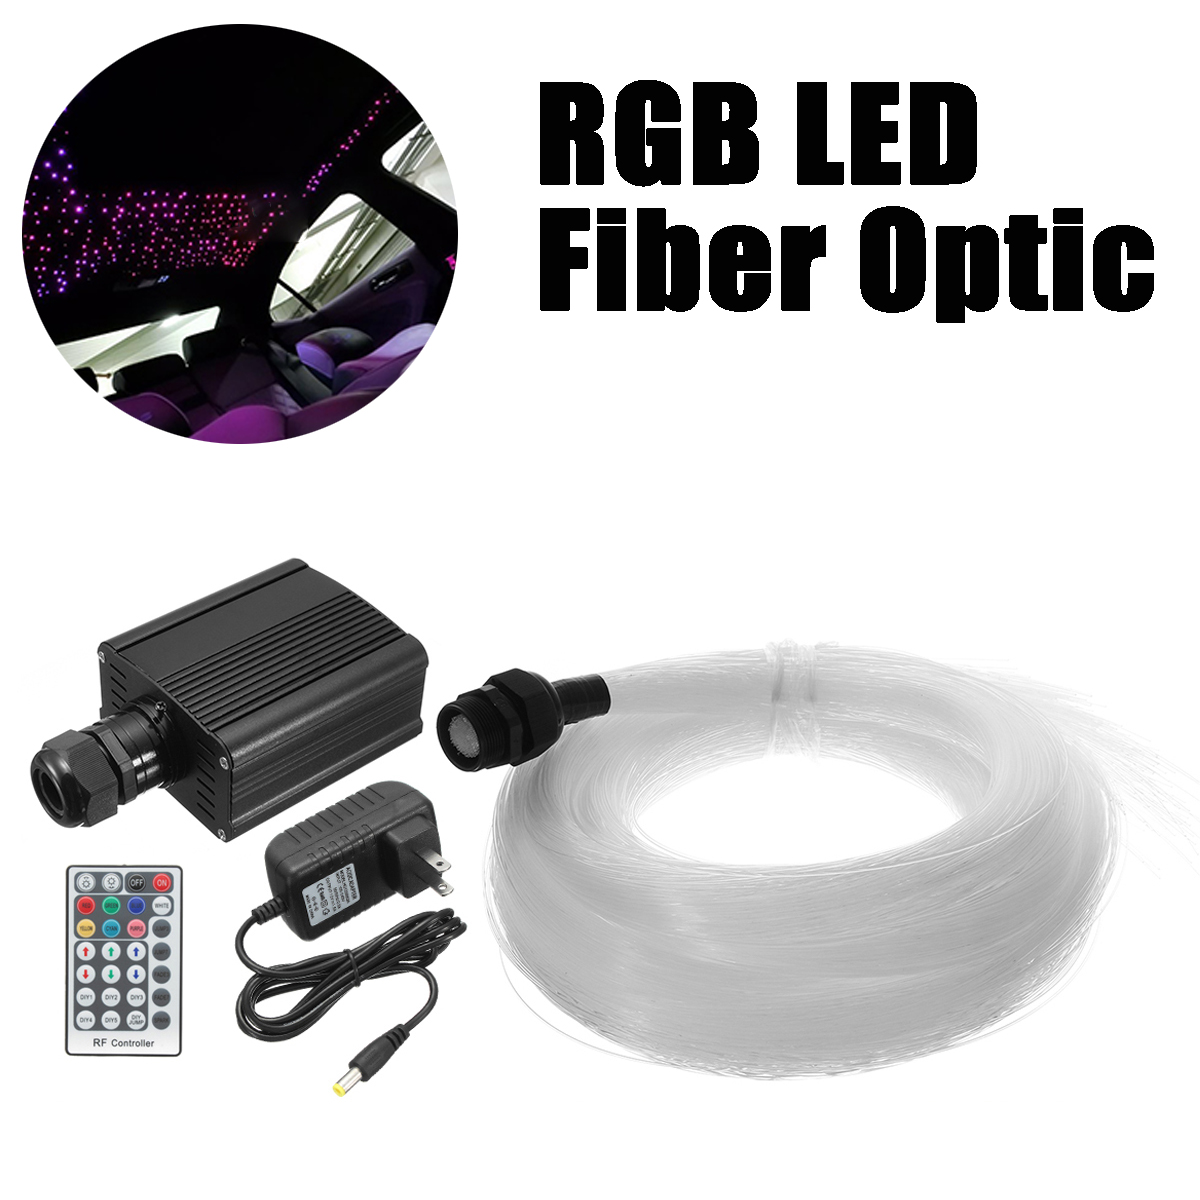 16W-RGBW-Engine-Remote-LED-Fiber-Optic-Star-Ceiling-Kit-Light-Fiber-Optic-Lamp-Light-Source-Device-E-1532732-7